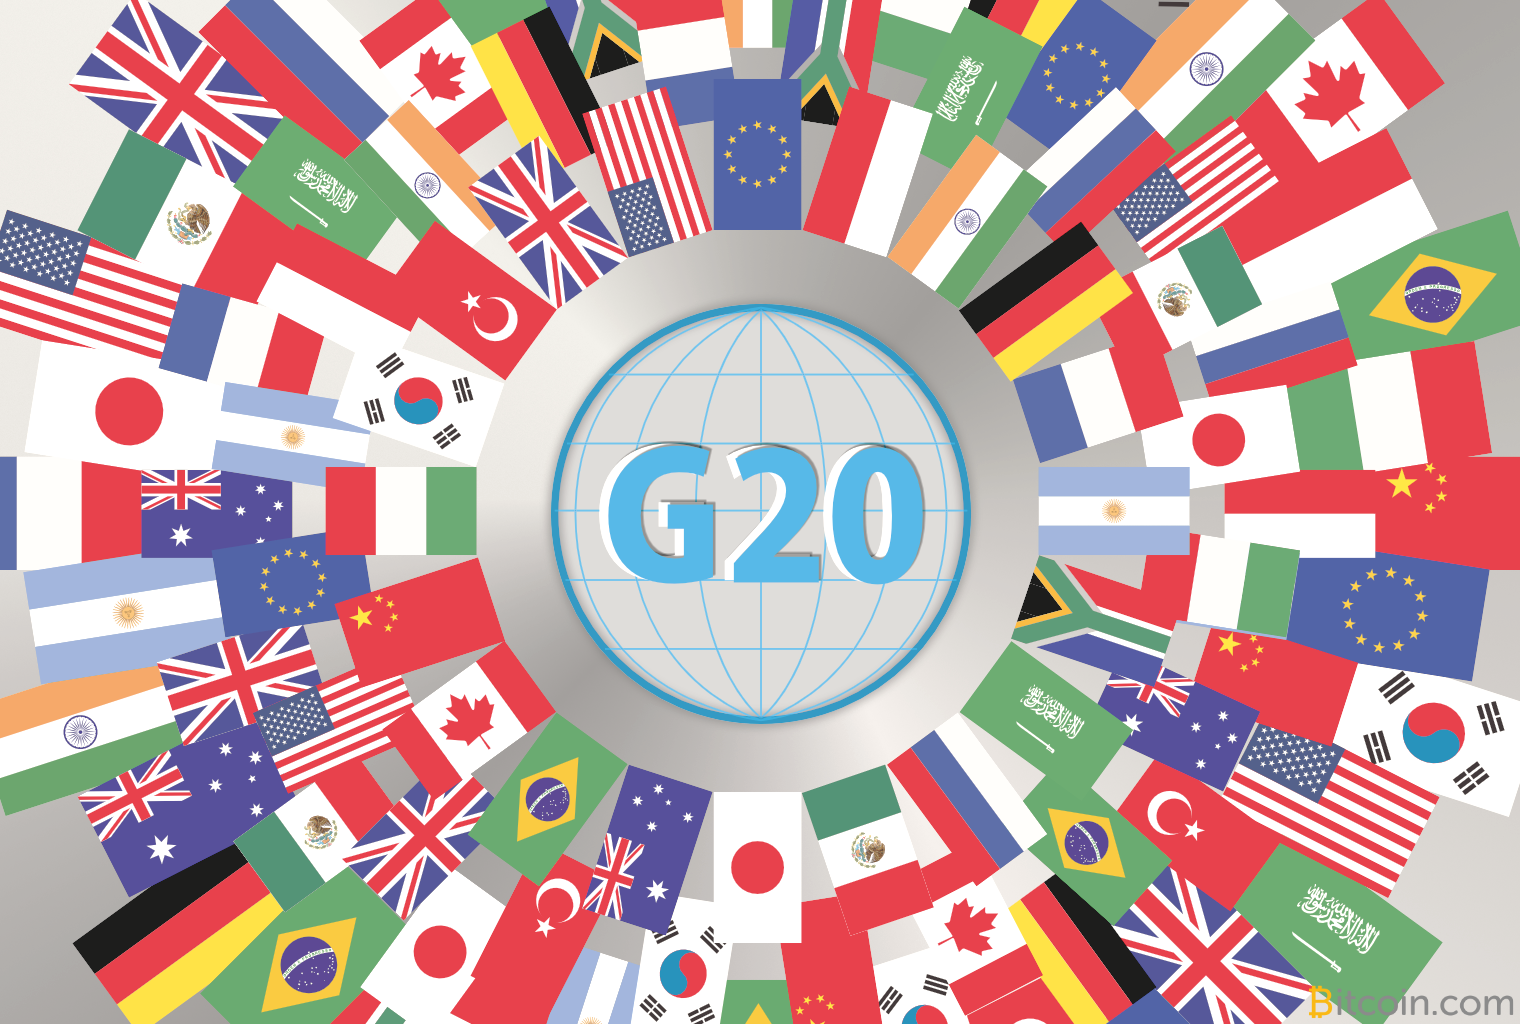 G20 news crypto обмен валюты китайская